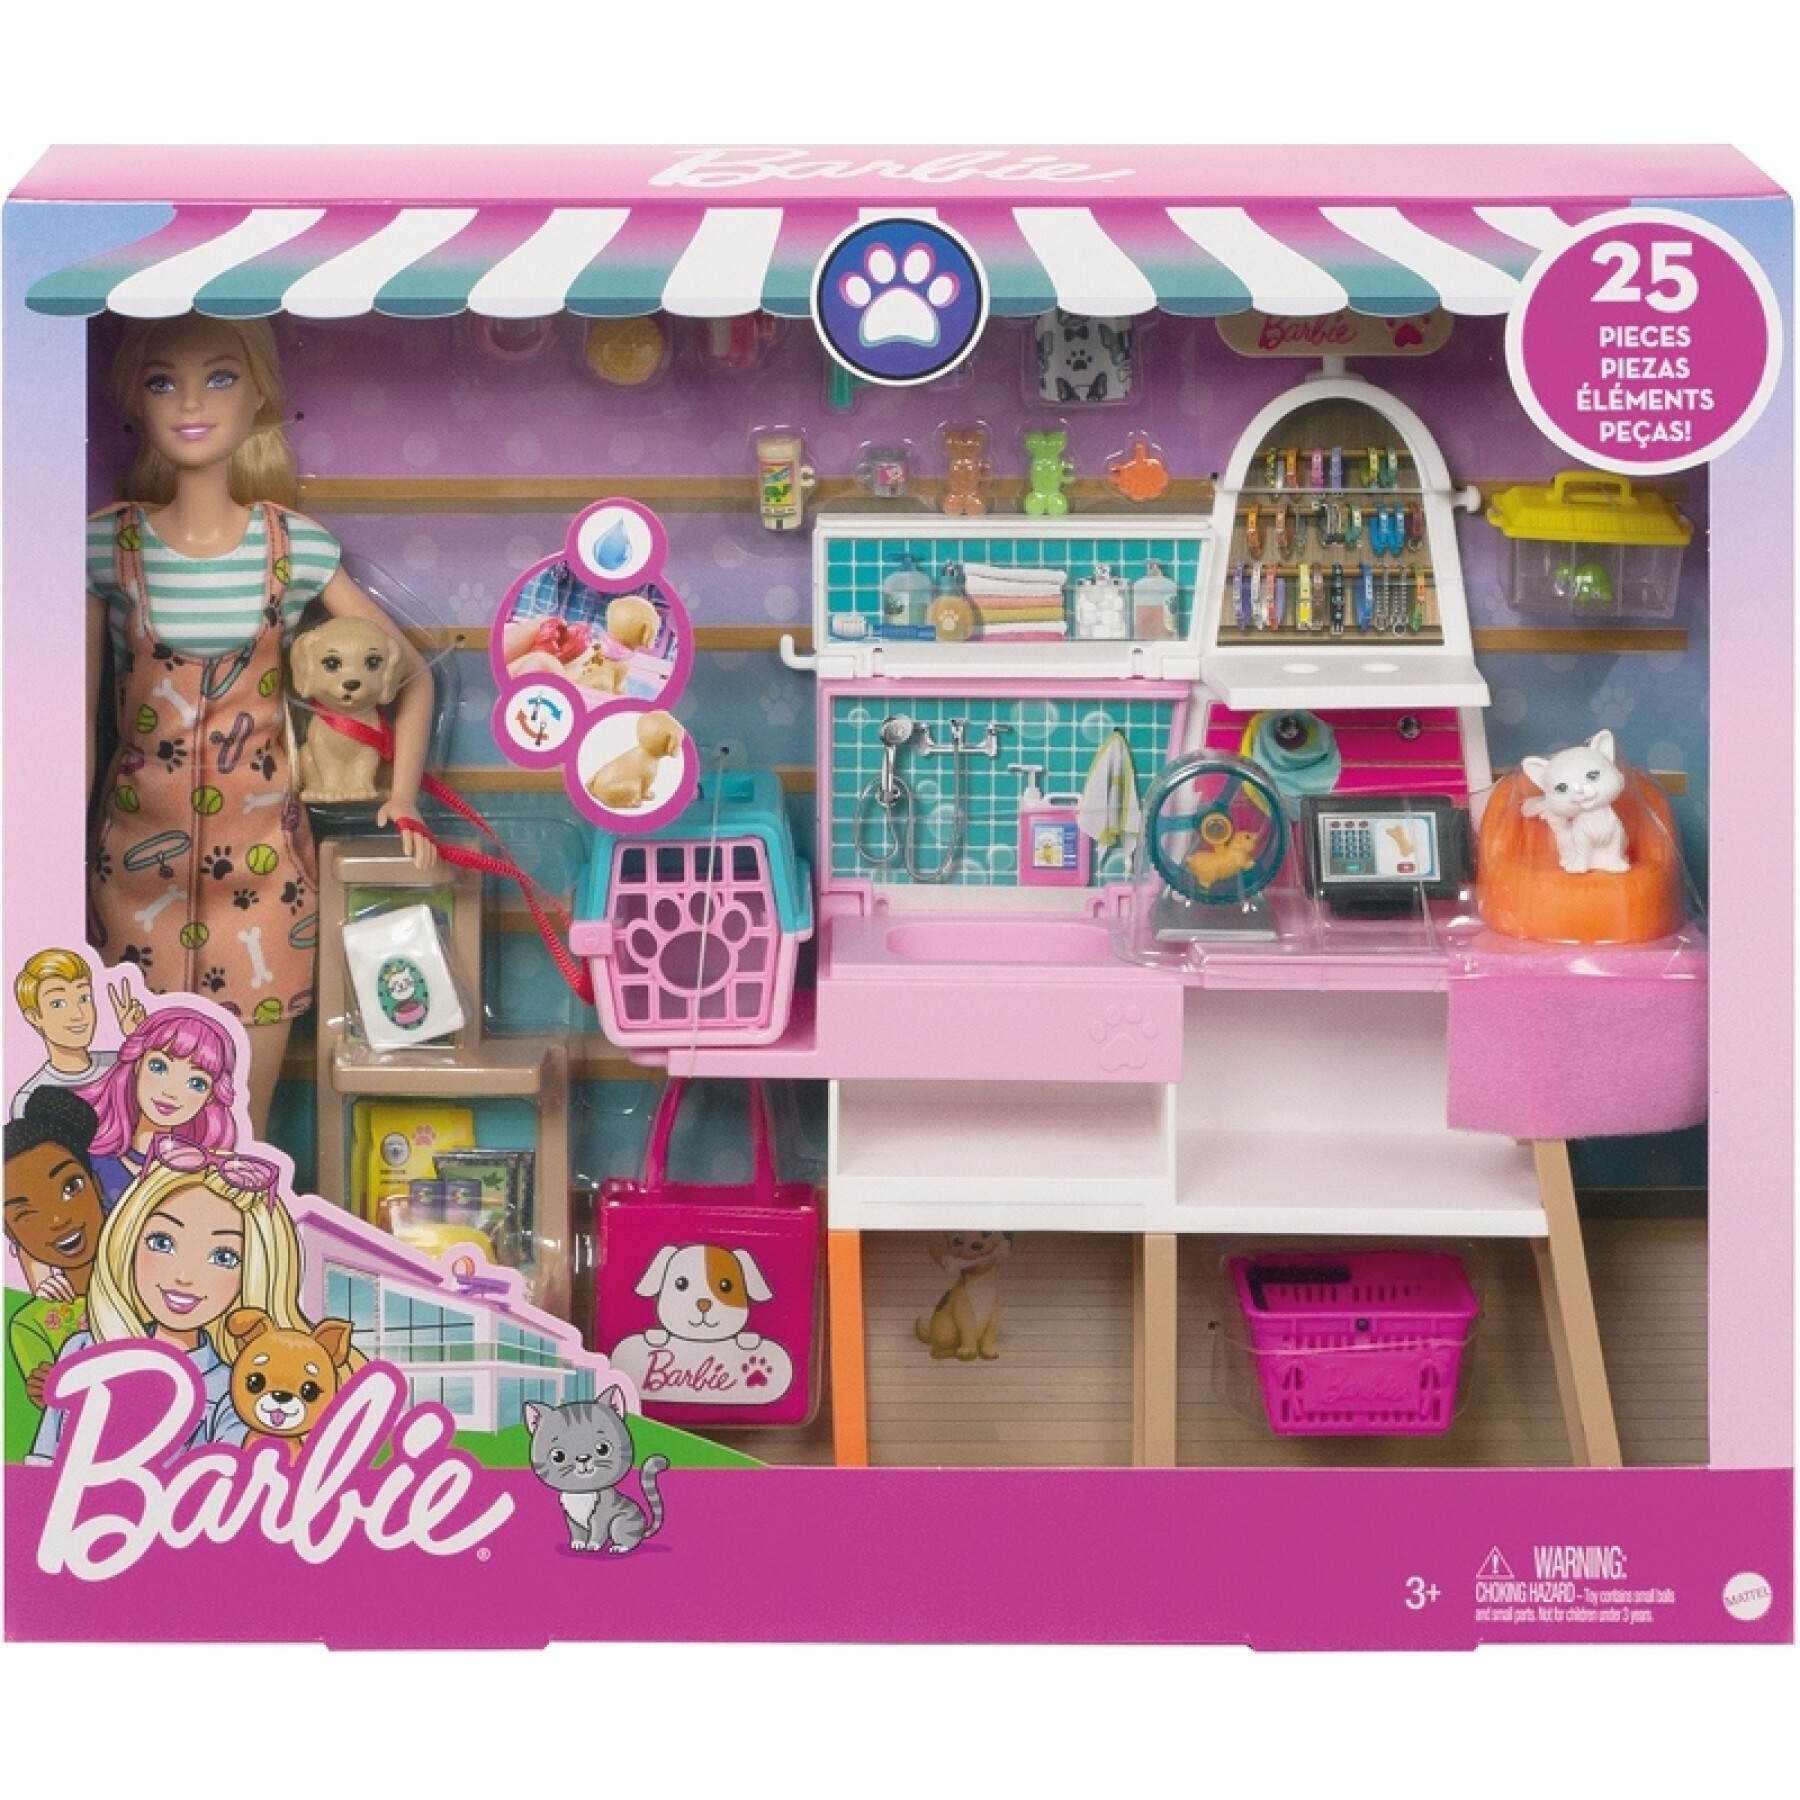 La bambola Barbie e il suo negozio di animali Mattel France